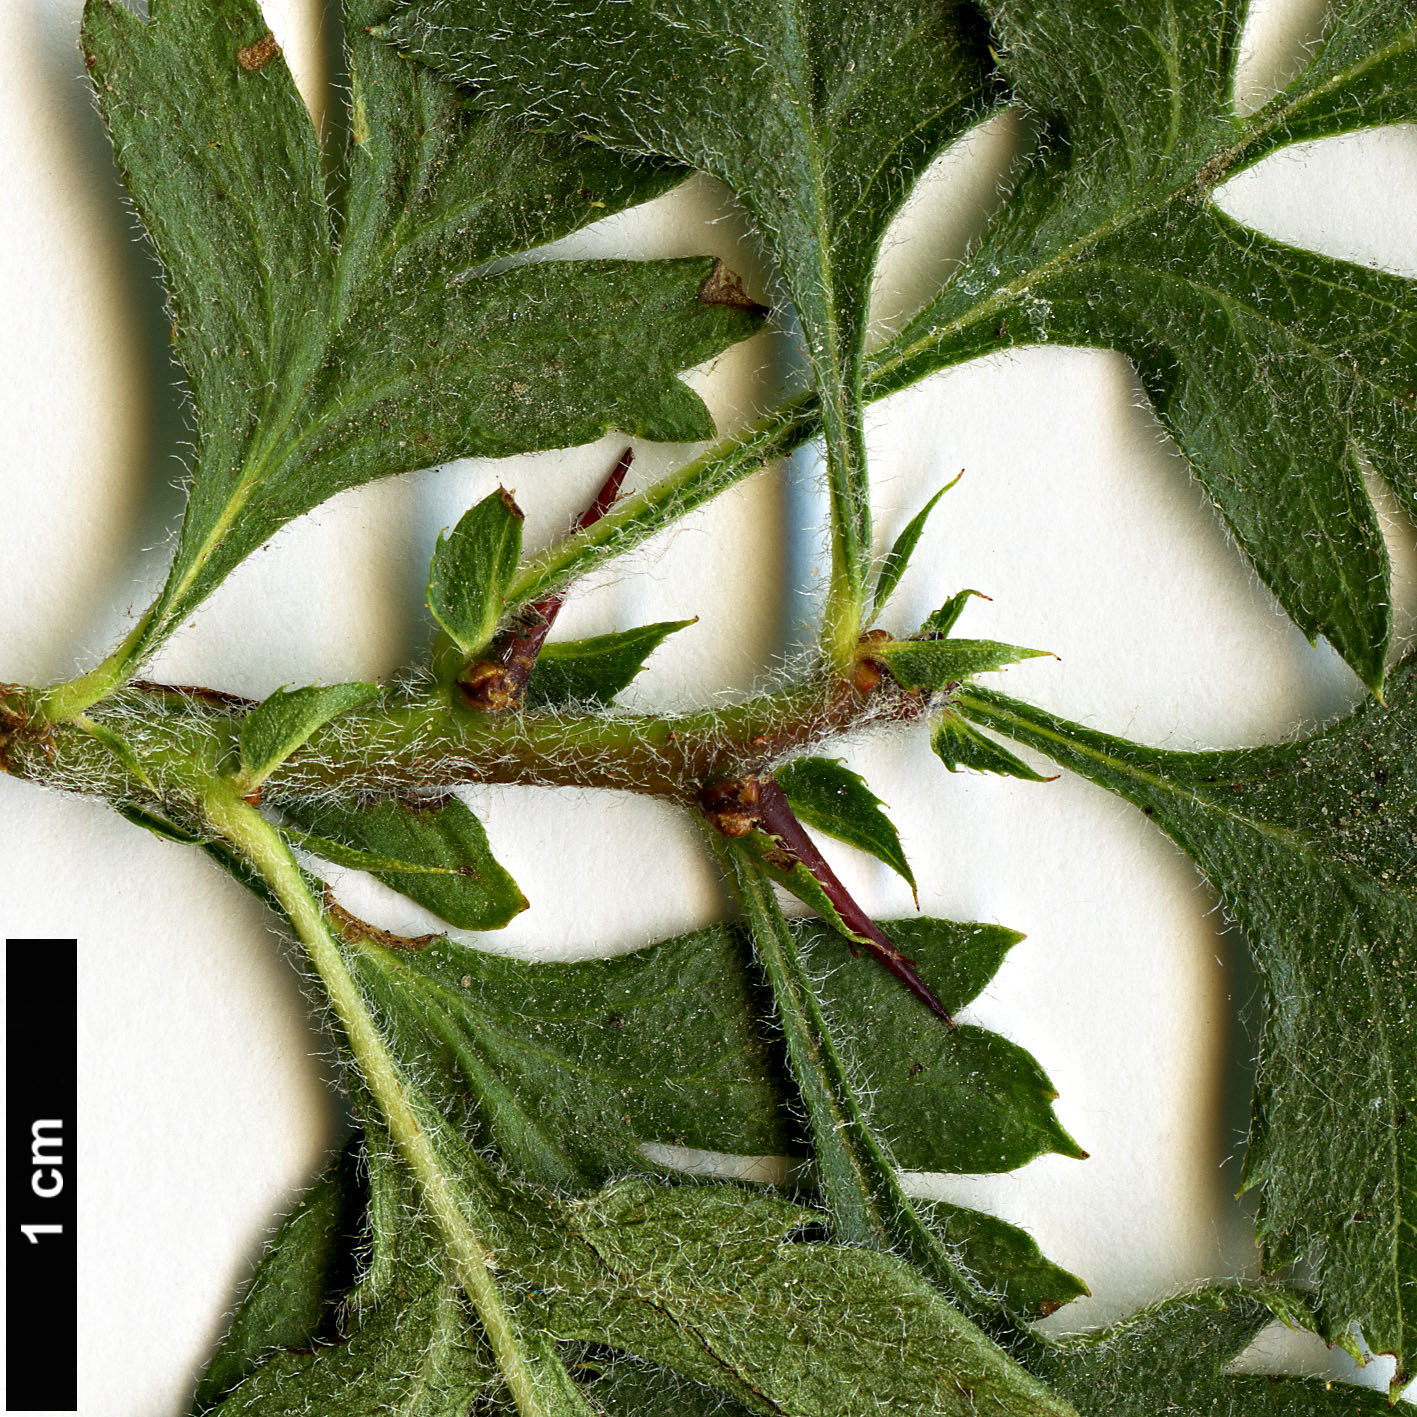 High resolution image: Family: Rosaceae - Genus: Crataegus - Taxon: orientalis - SpeciesSub: ‘Neslorion’